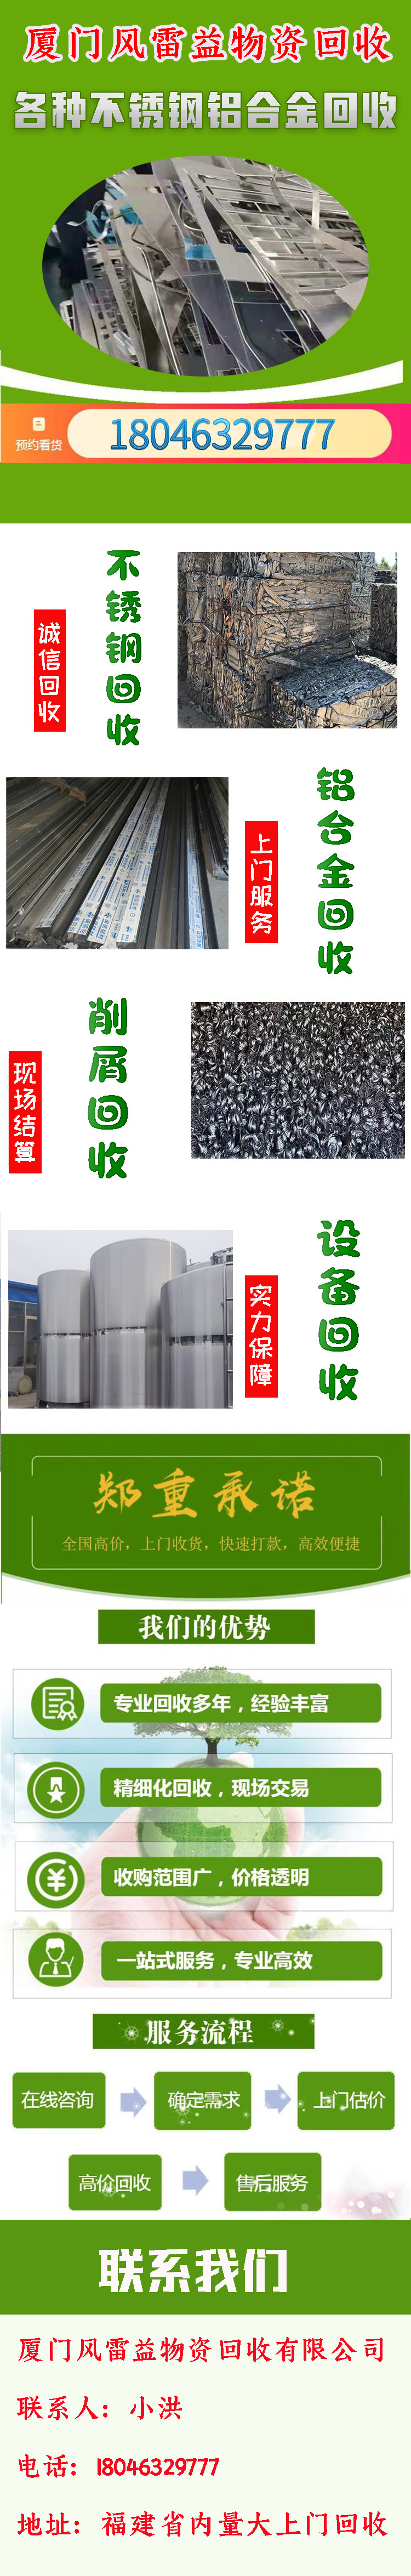 漳州不锈钢回收厂家